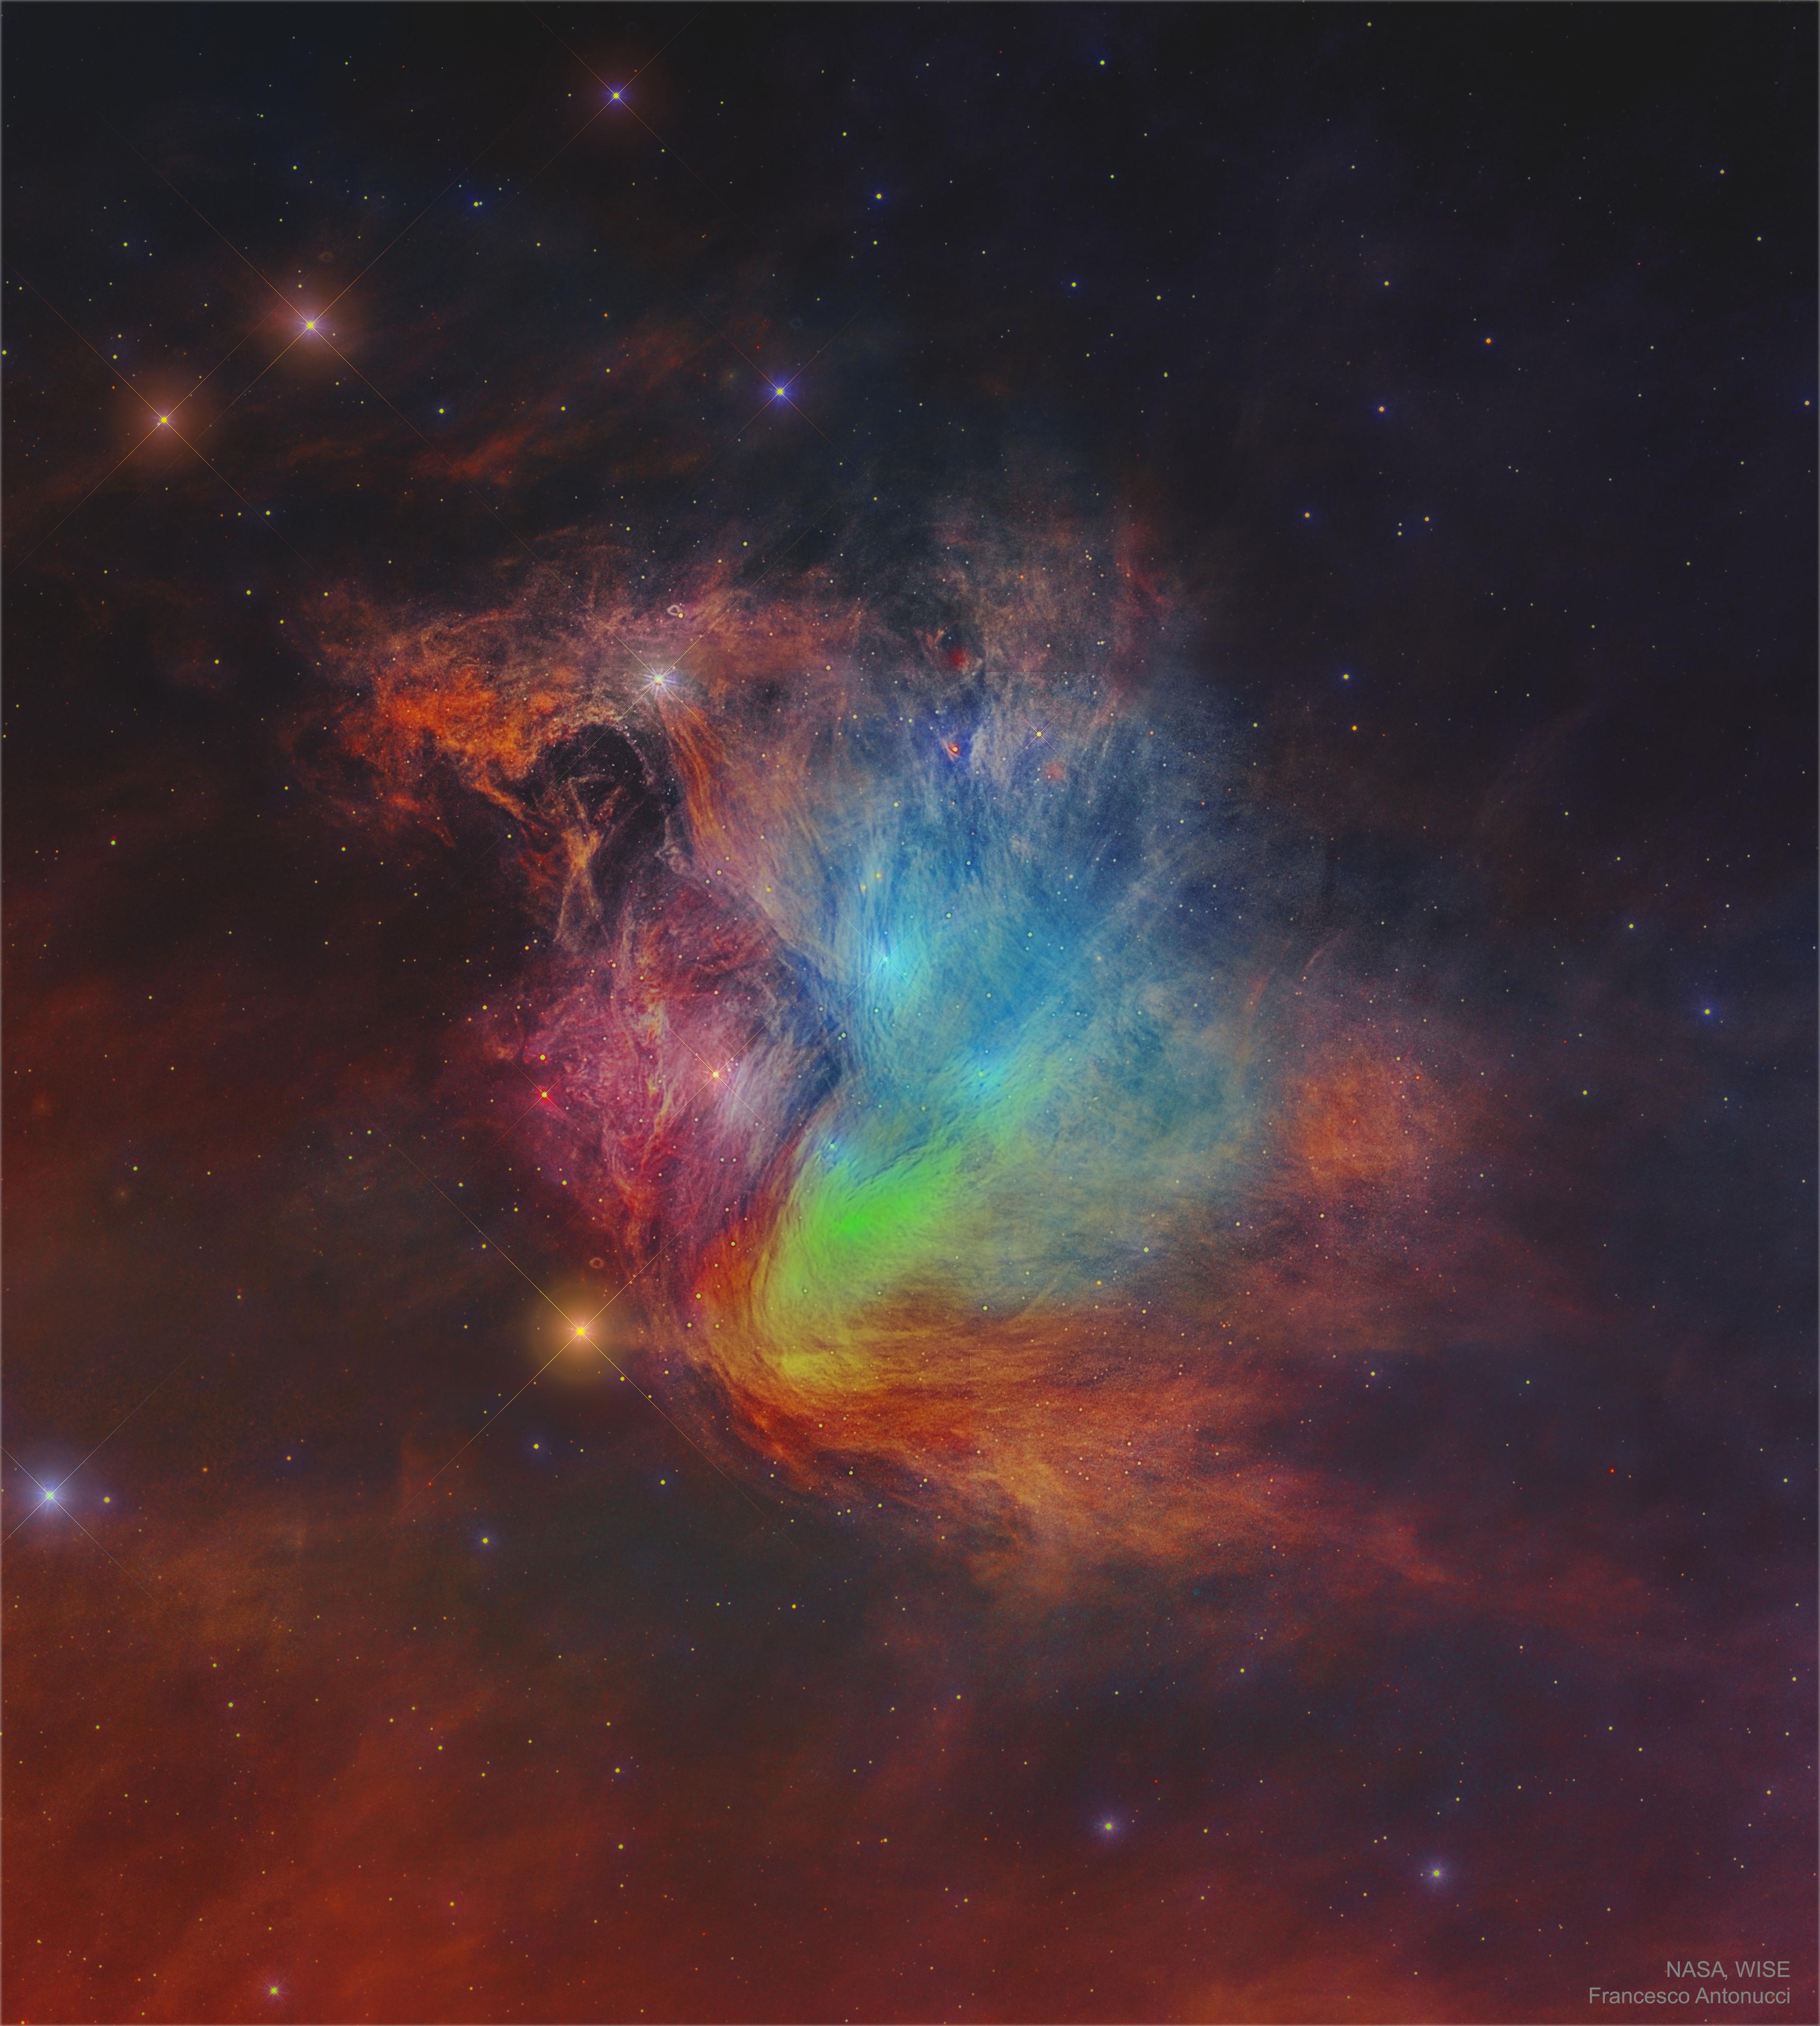 يظهر حقل الغبار الخيطيّ بأقسام مُختلفة تُظهر ألواناً مُختلفة، بينما النجوم تُرقِّط الخلفيّة